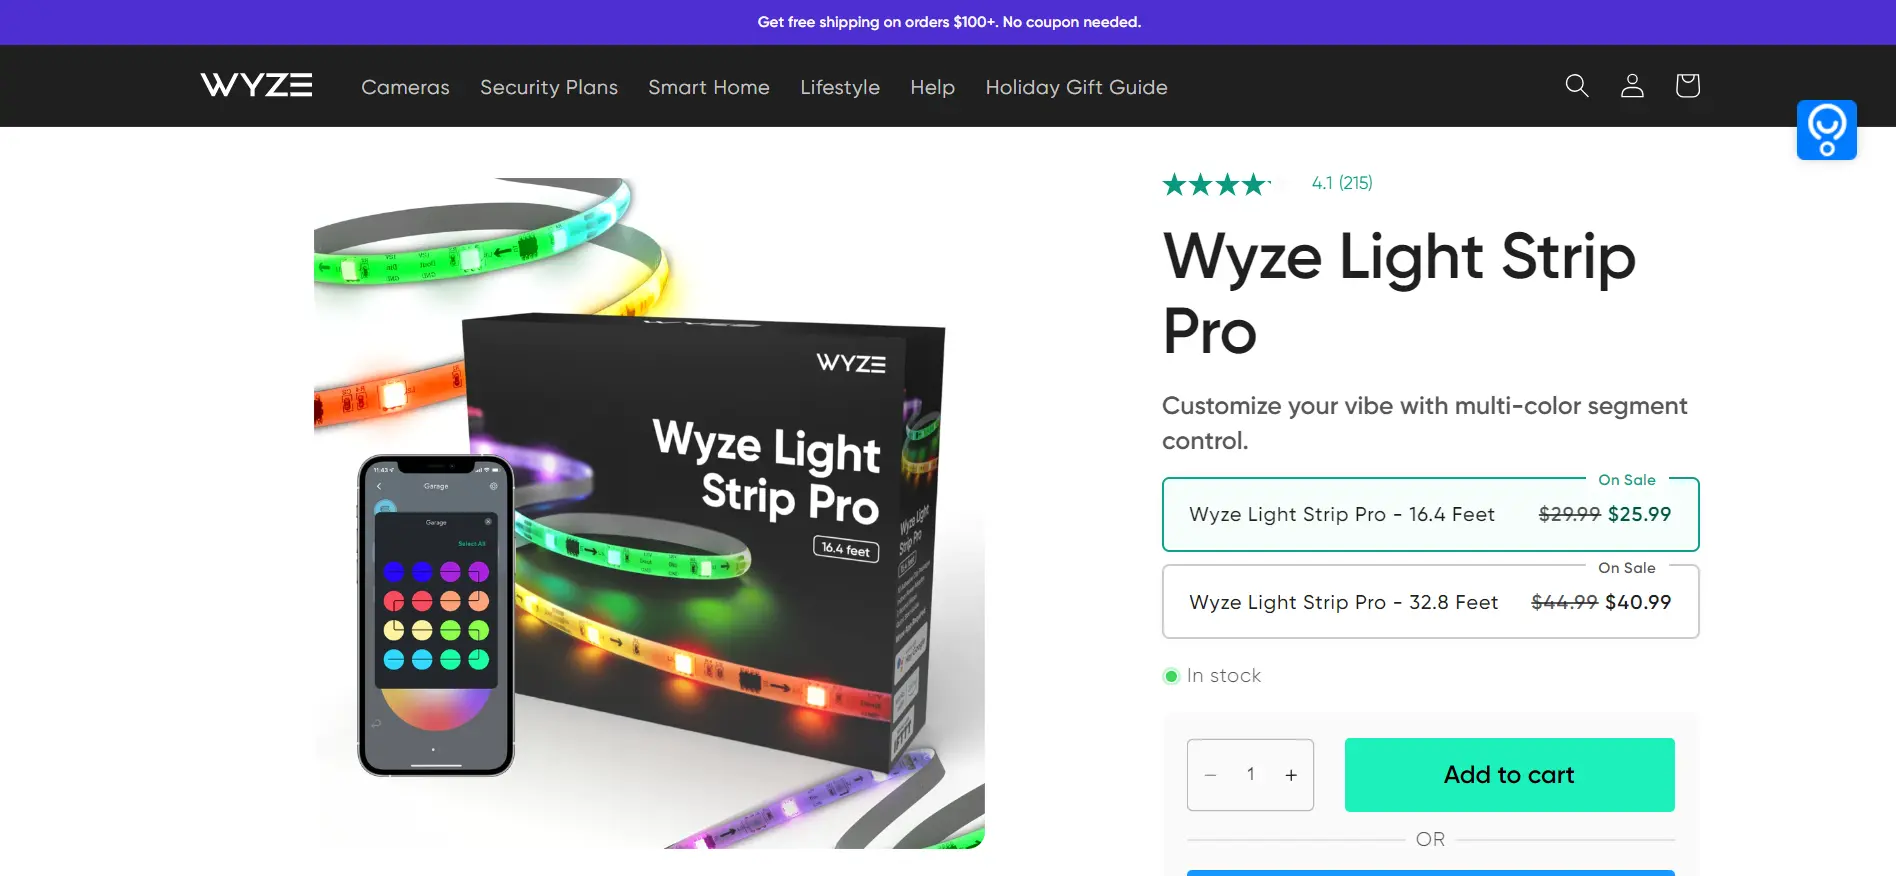 WYZE Light Strip Pro